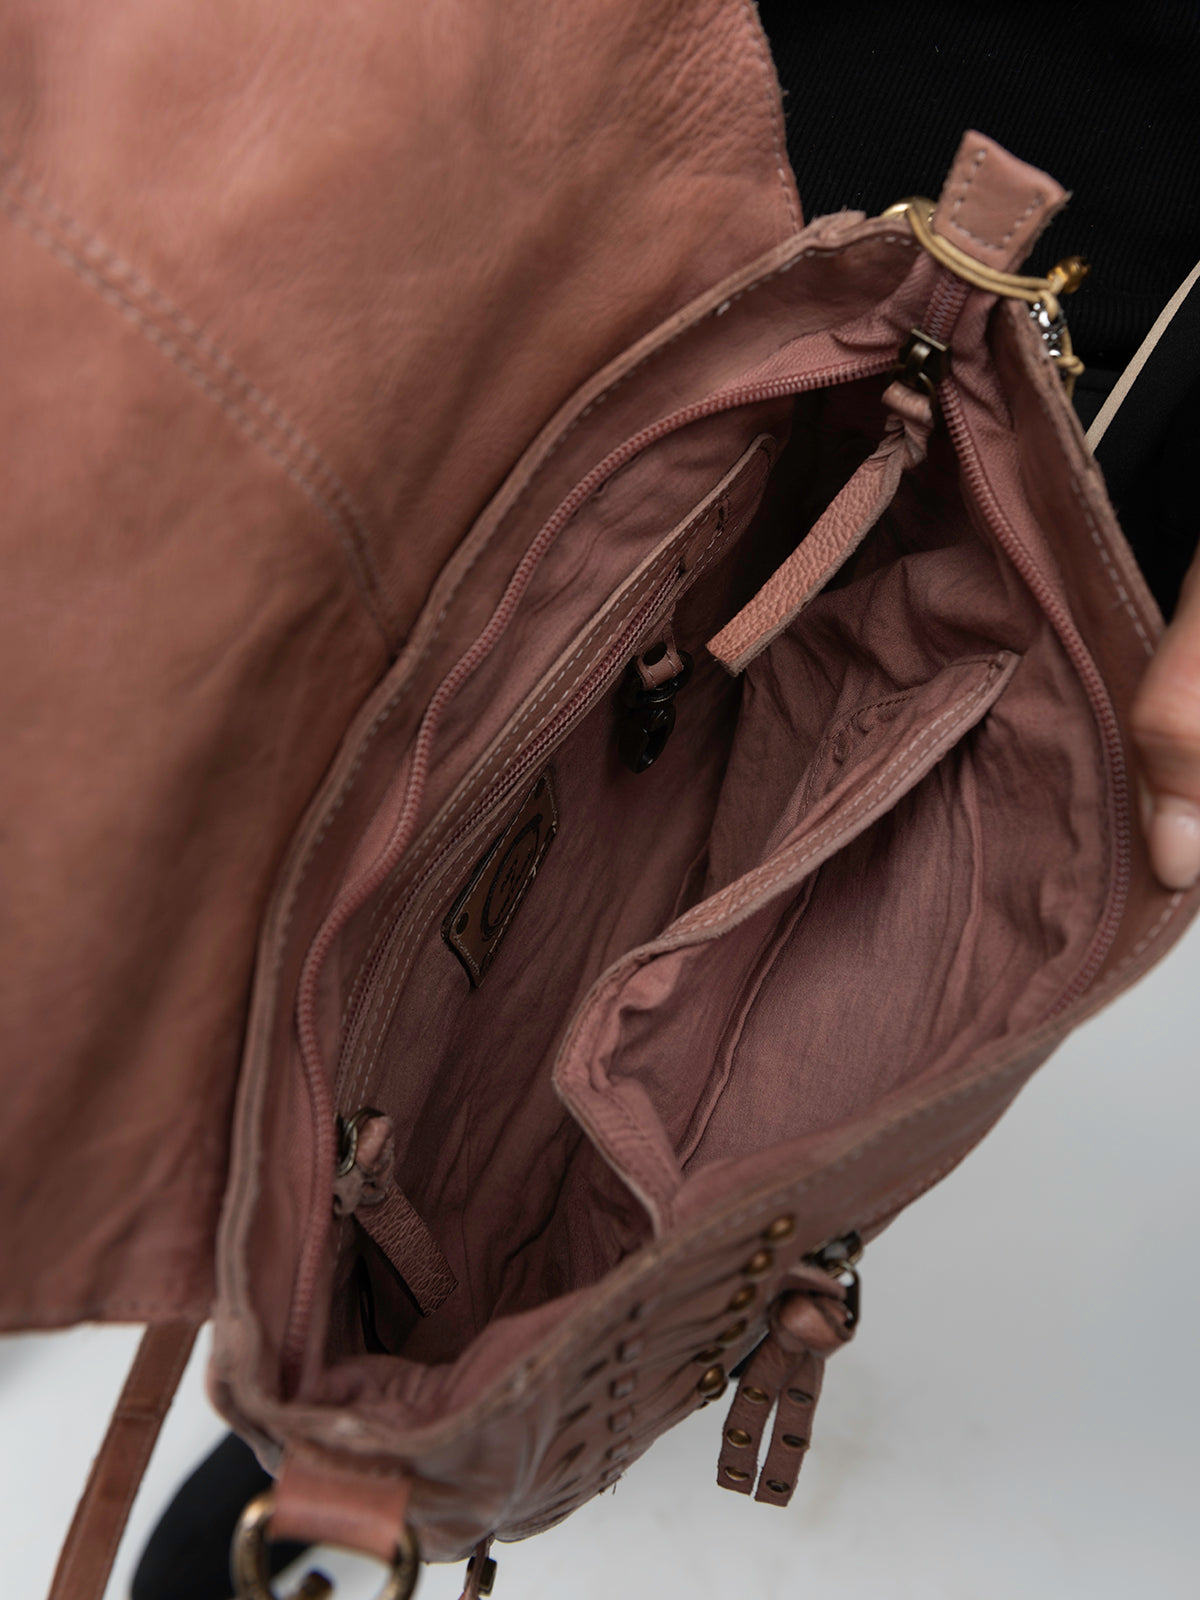 CAROB: Blush leather crossbody bag by Art N Vintage